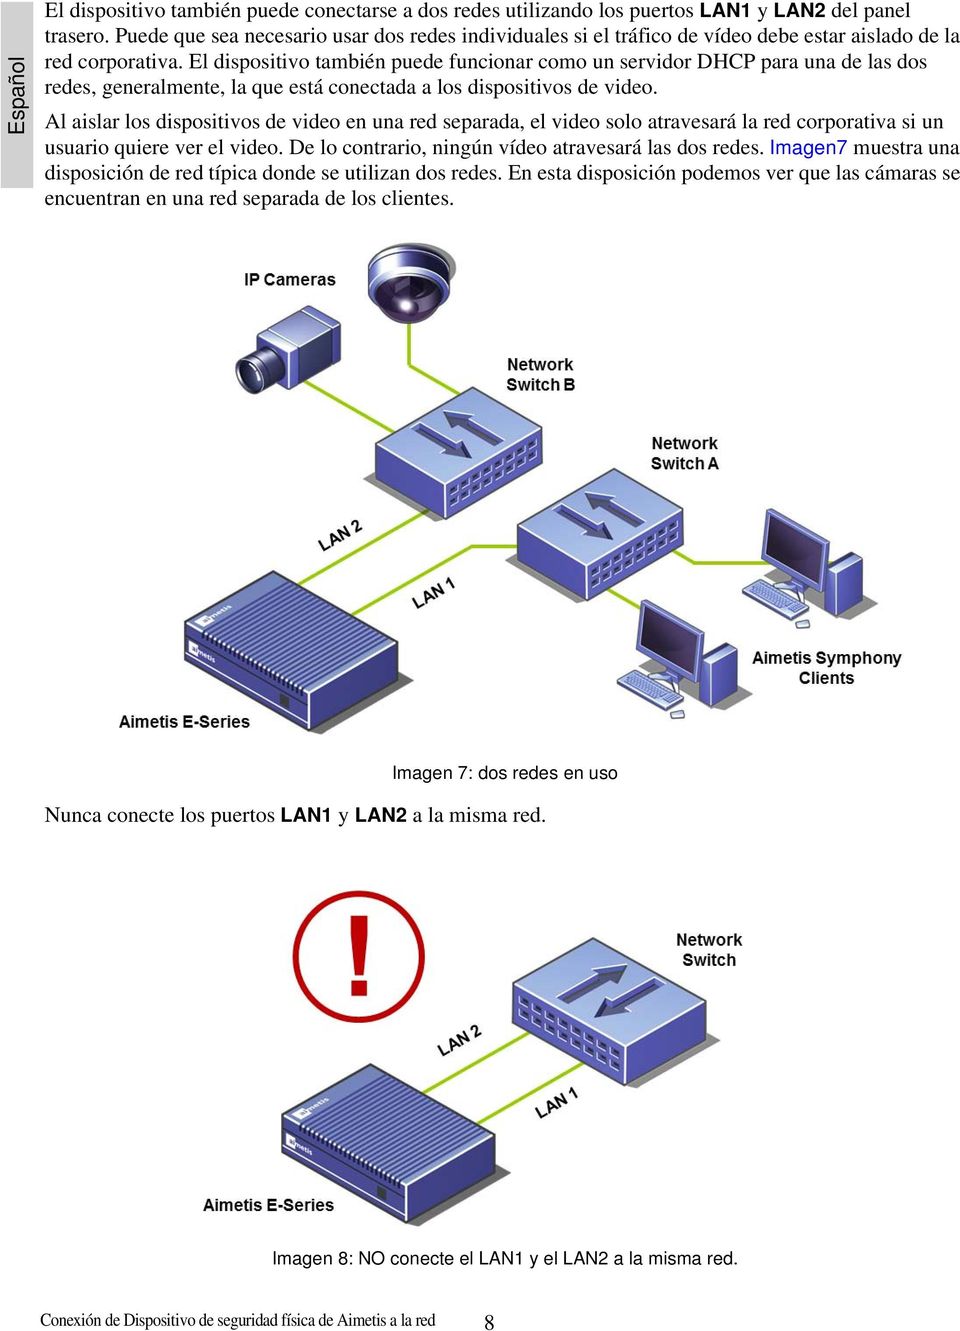 El dispositivo también puede funcionar como un servidor DHCP para una de las dos redes, generalmente, la que está conectada a los dispositivos de video.